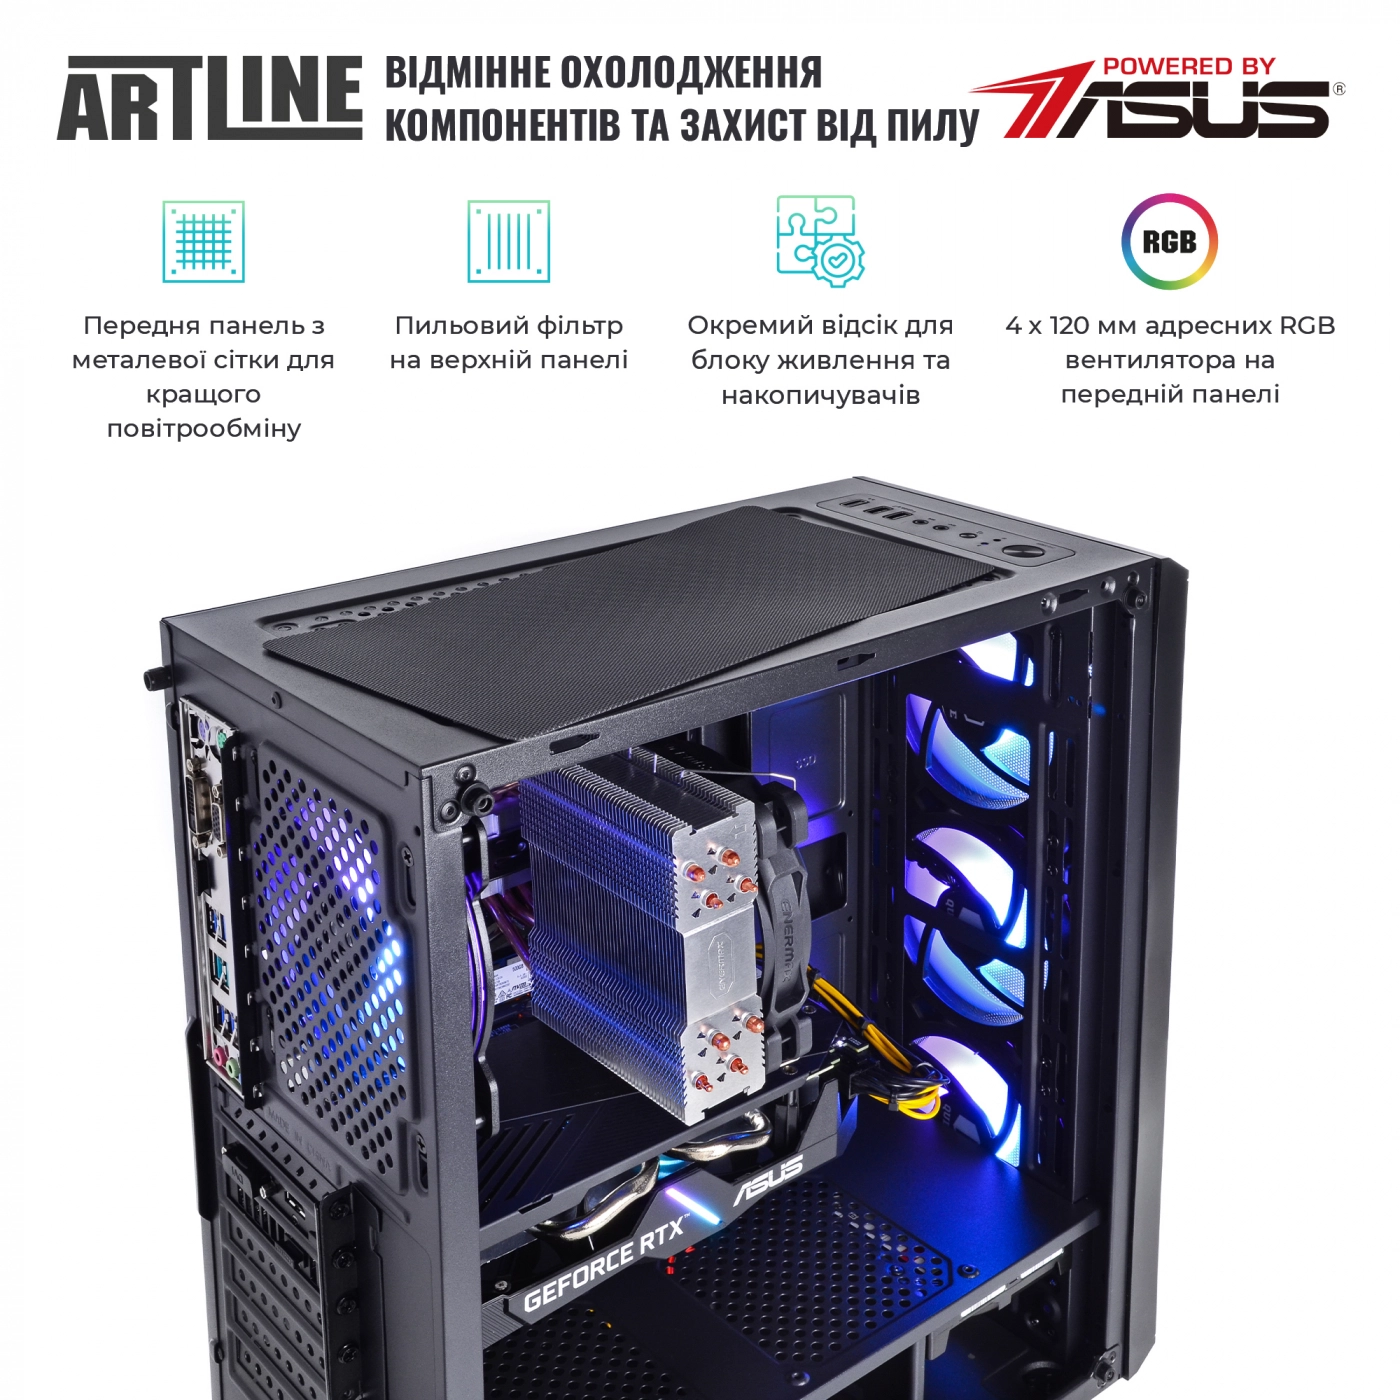 Купить Компьютер ARTLINE Gaming X68v10 - фото 4